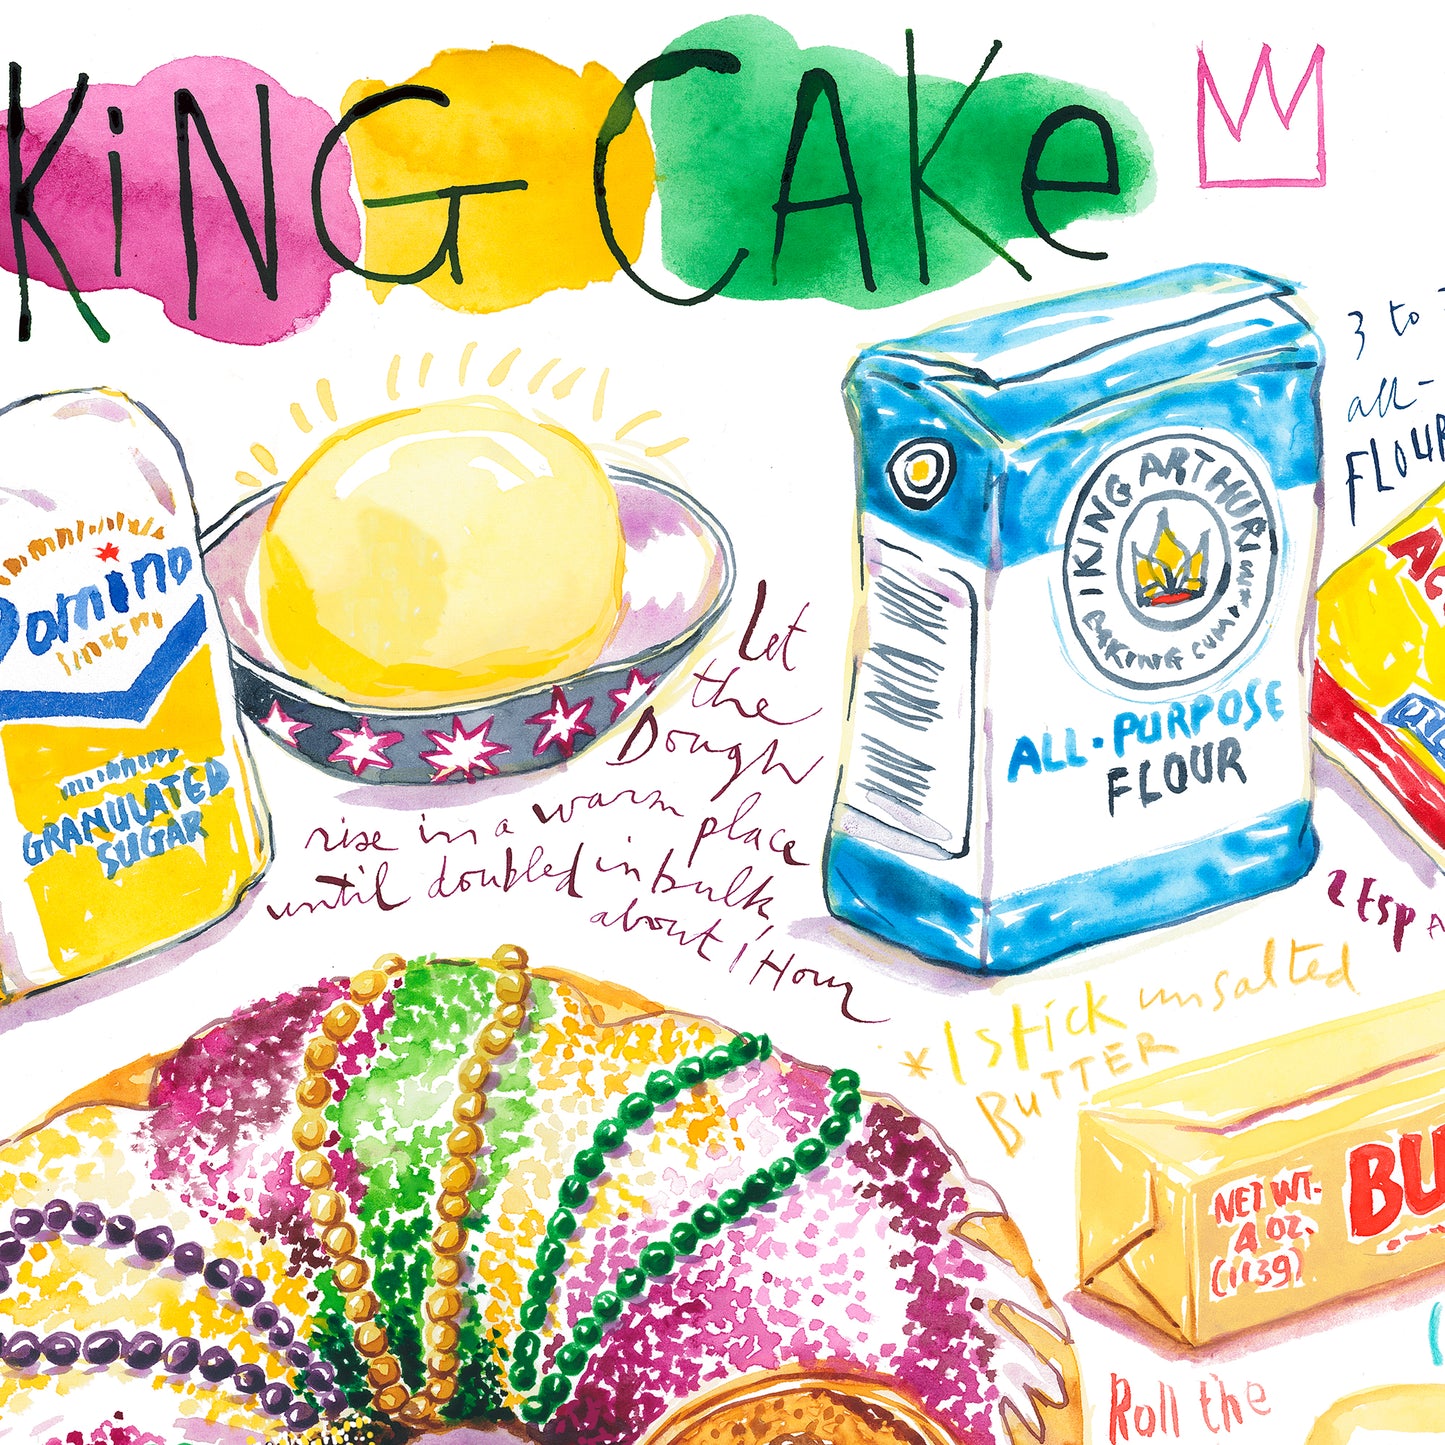 Louisiana King Cake recipe